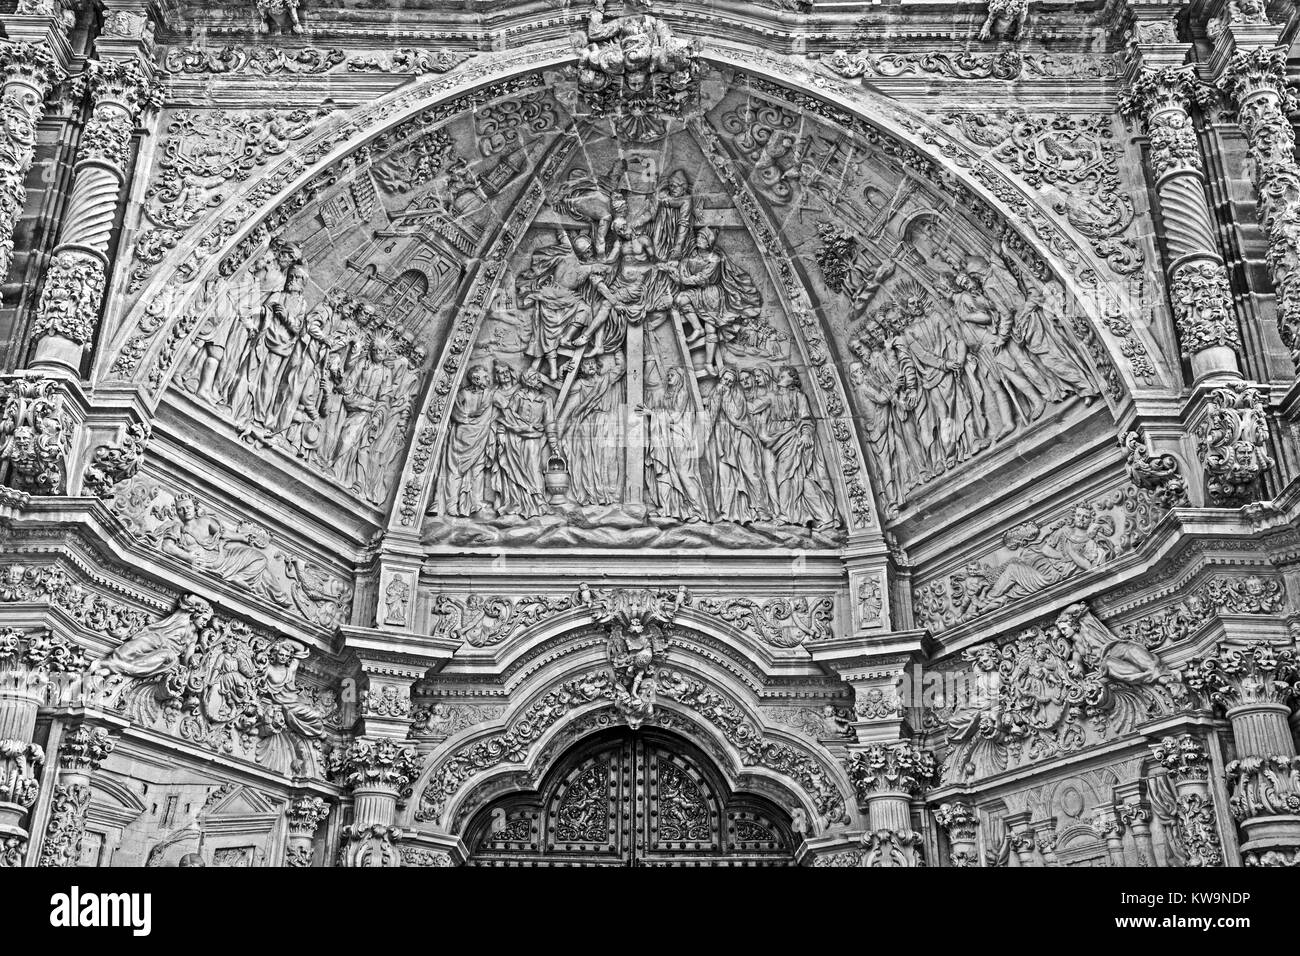 Cathédrale de Santa Maria, Astorga, Espagne (1471-1693) Banque D'Images